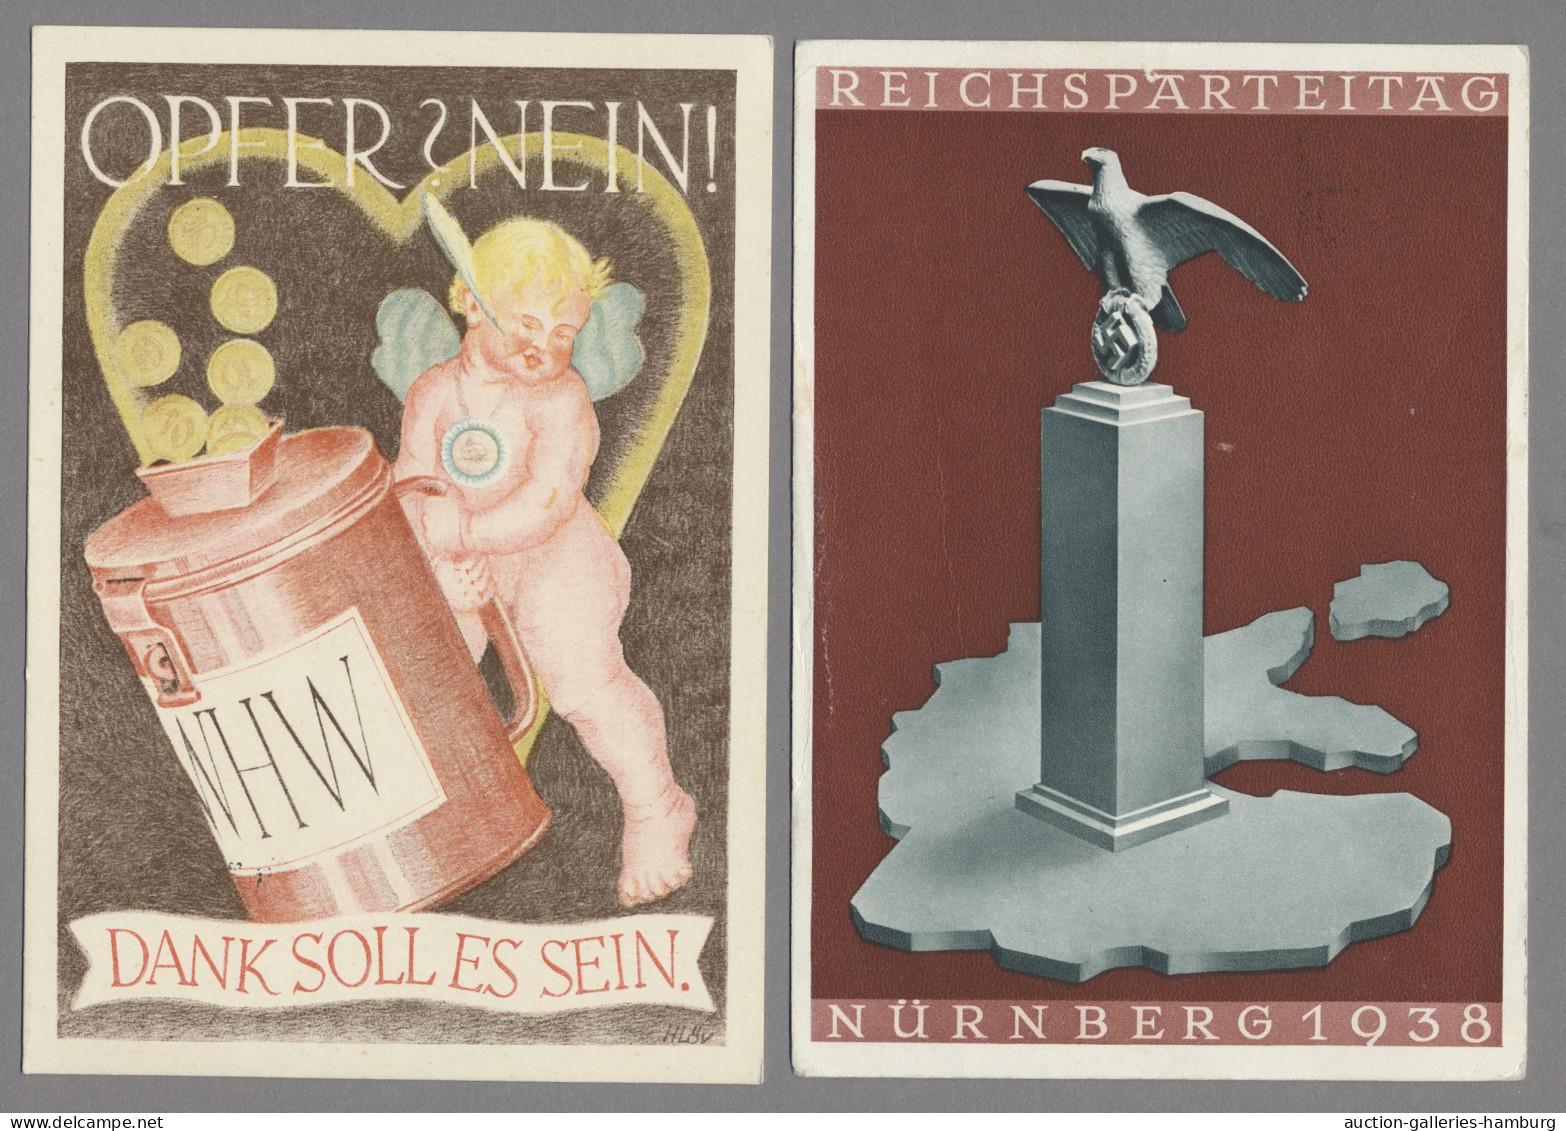 Ansichtskarten: 1897-1963, Partie von etwa 350 Ansichtskarten mit u.a. Deutschla